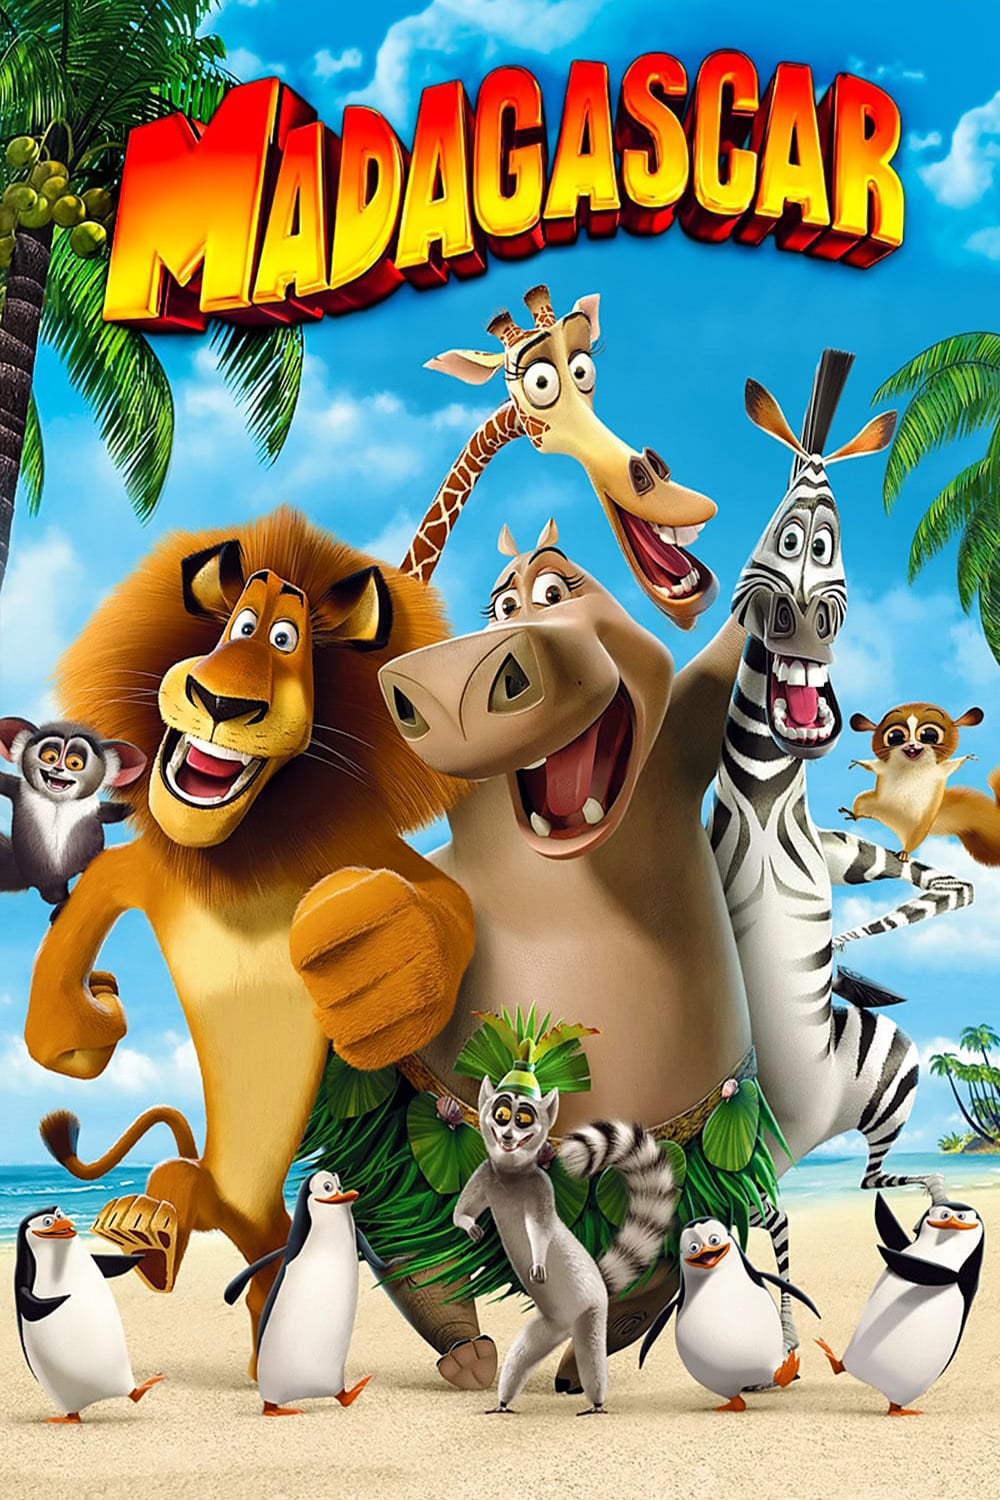 Madagascar 2005 Dual Audio in 720p BluRay